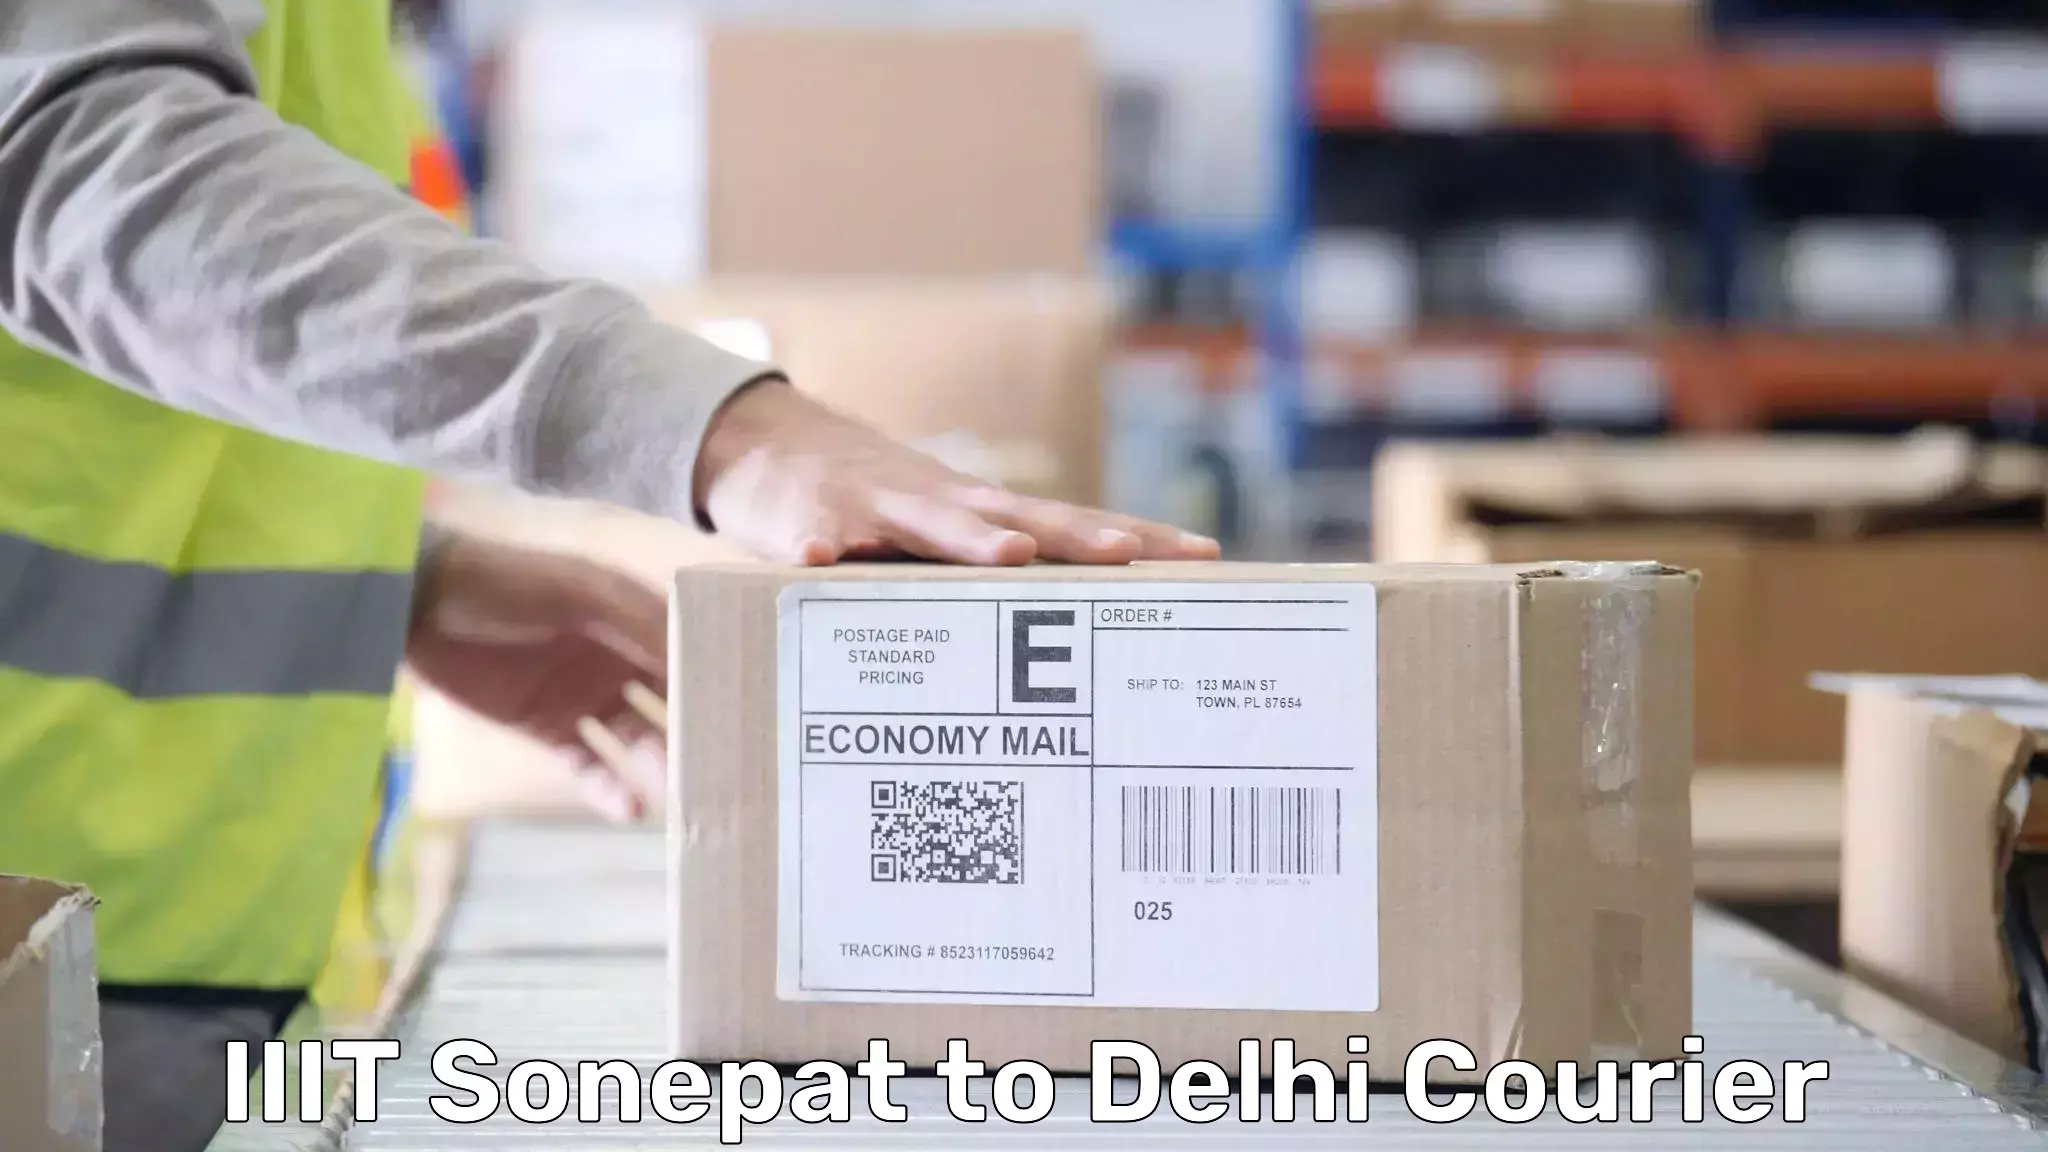 Luggage transport guidelines IIIT Sonepat to NIT Delhi